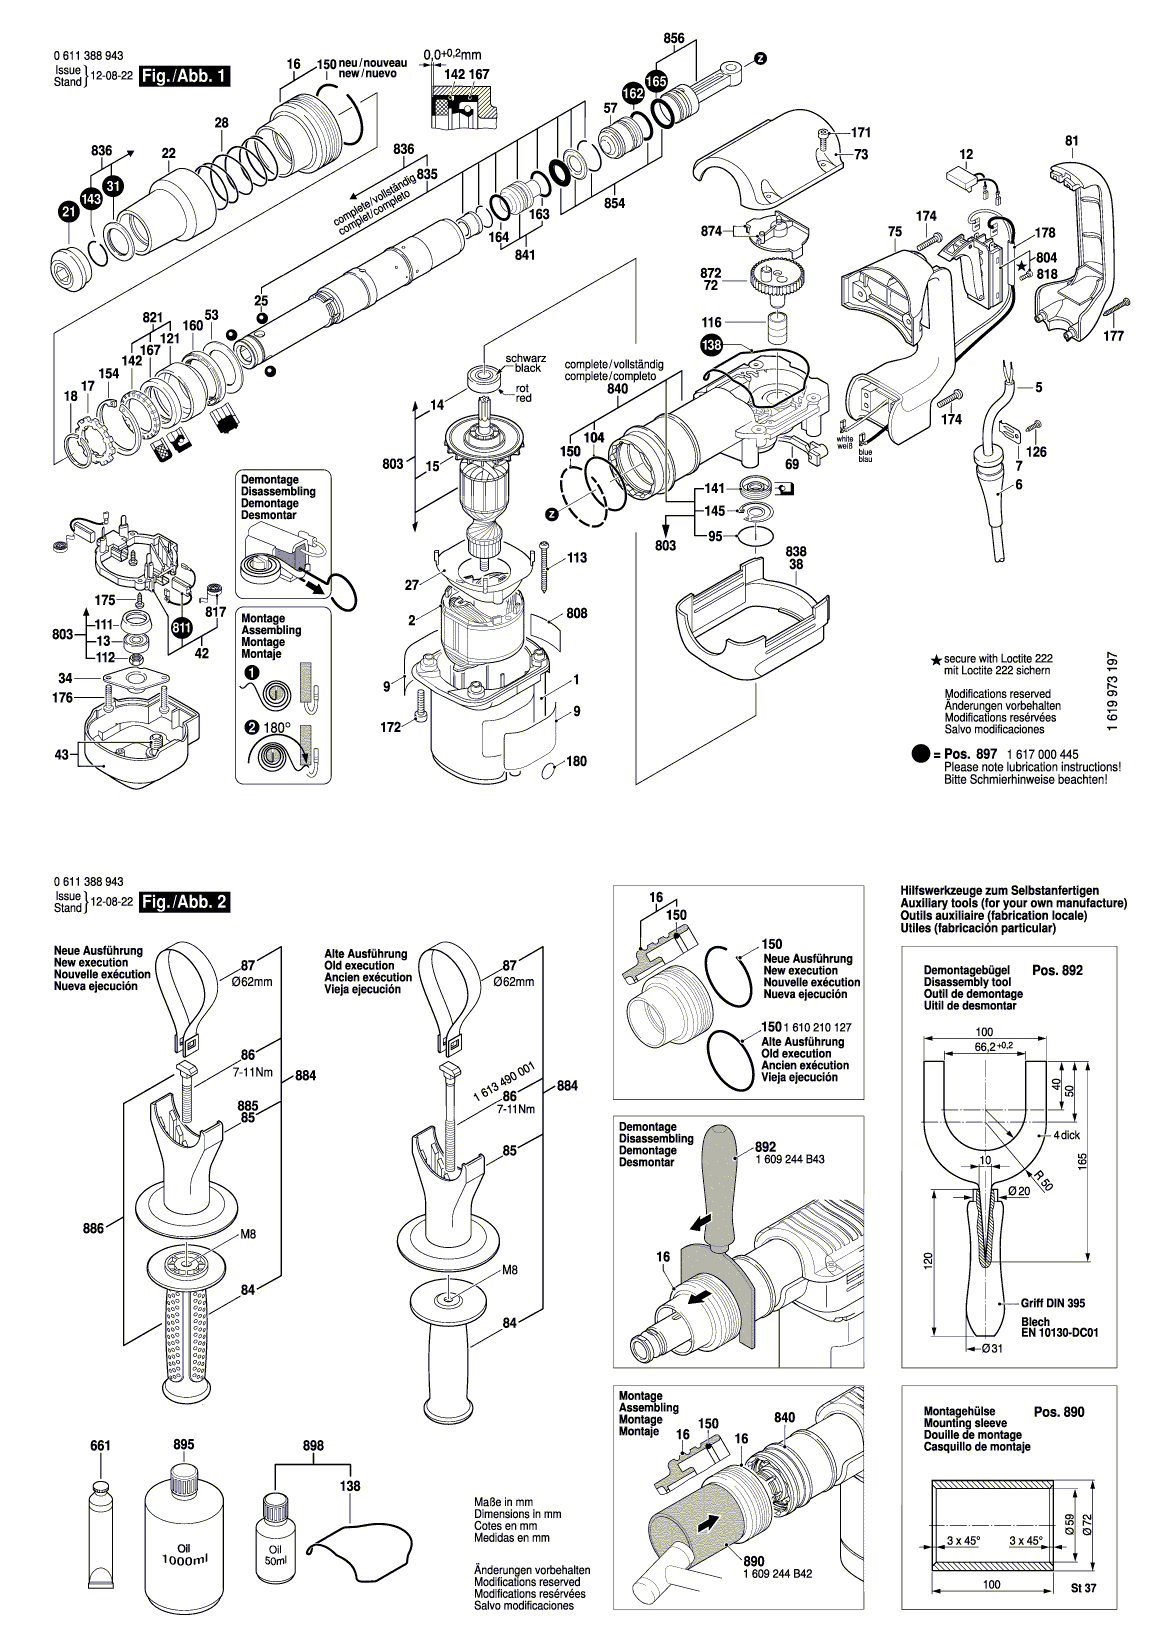 Схема на Отбойный молоток Bosch GSH 388 X (0 611 388 904)